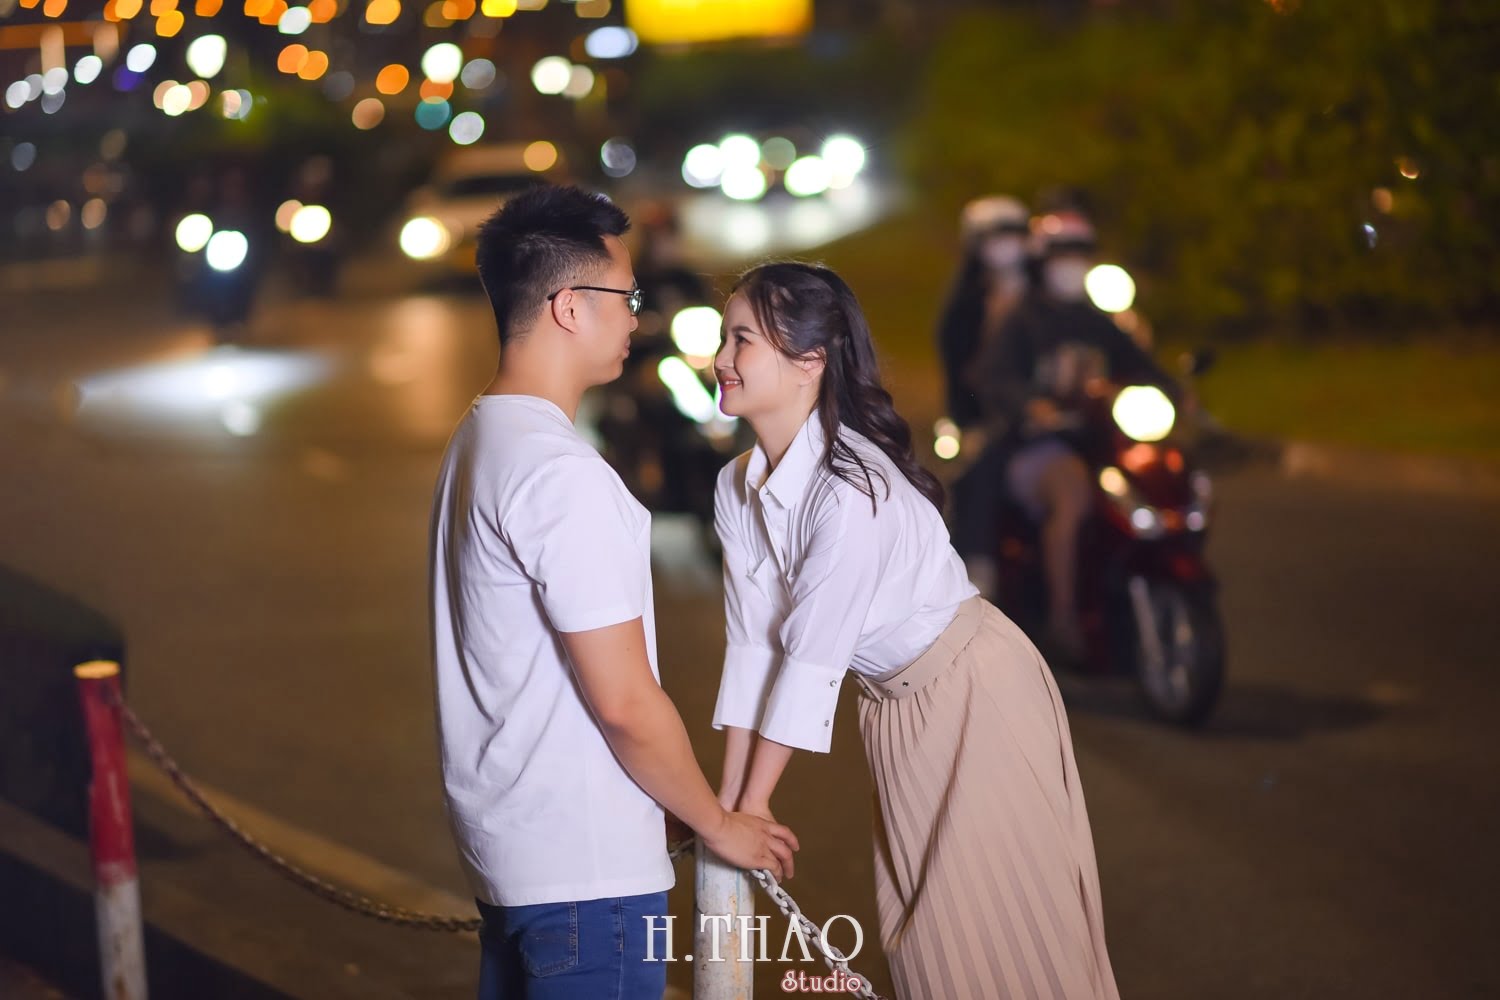 Anh chup couple ban dem 11 min - #2 Ý tưởng chụp ảnh ban đêm đẹp lung linh – HThao Studio